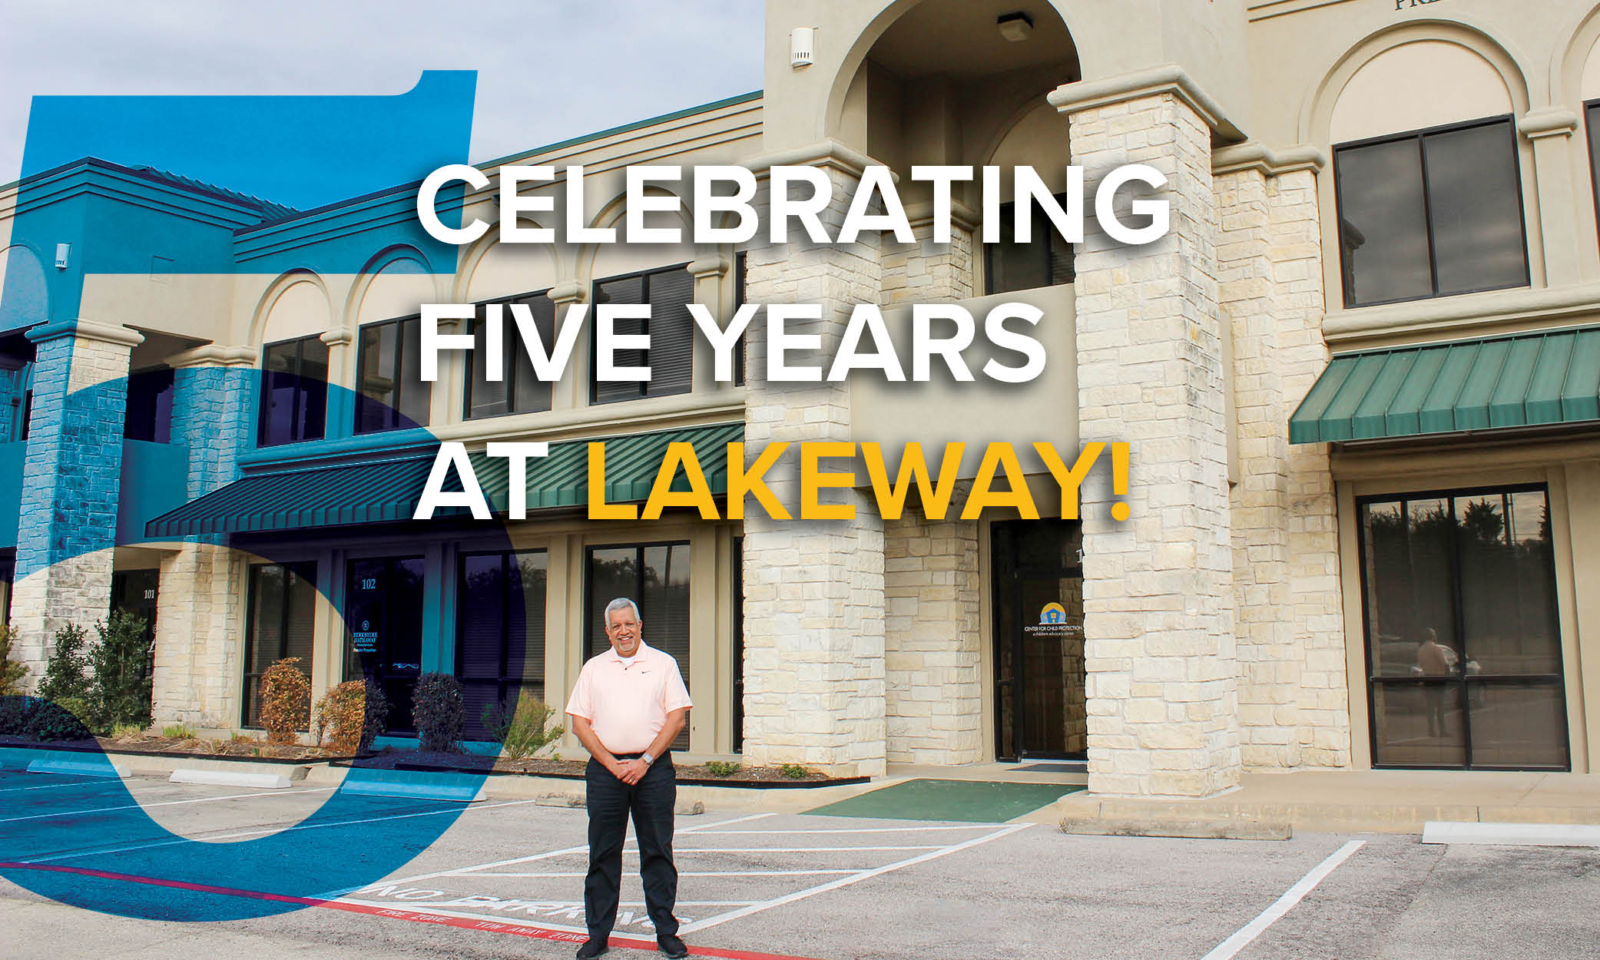 Celebrating 5 Years at Lakeway